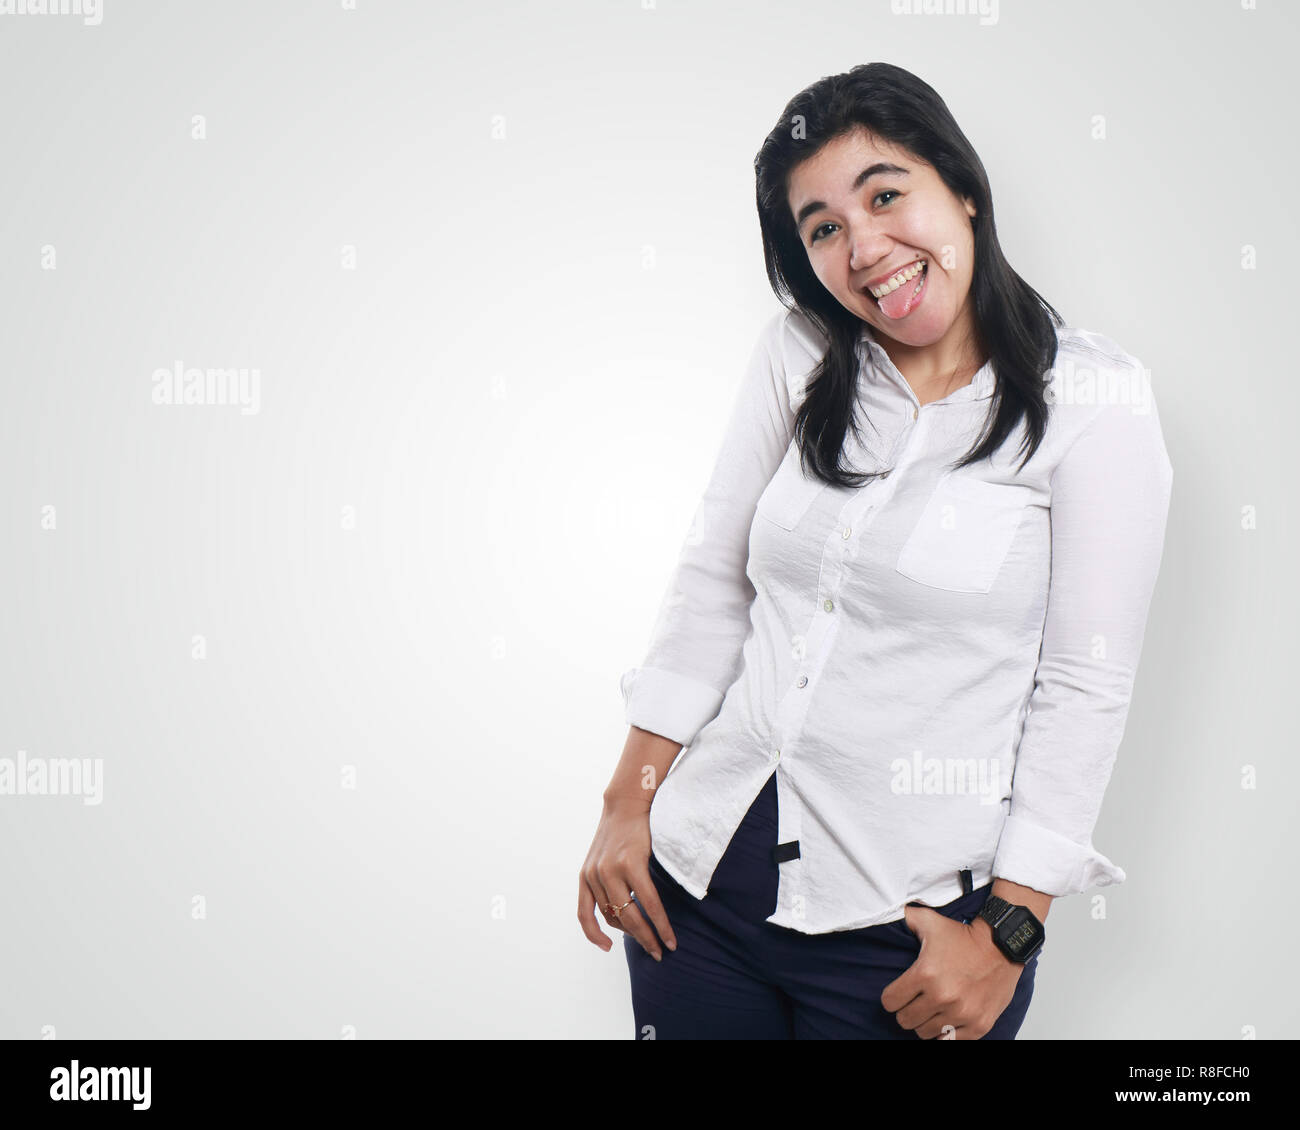 Foto Bild Portrait einer schönen netten jungen asiatischen Geschäftsfrau sah sehr aufgeregt und glücklich lachend mit beiden Hände auf ihre Taille, mit herausgestreckter Zunge Stockfoto